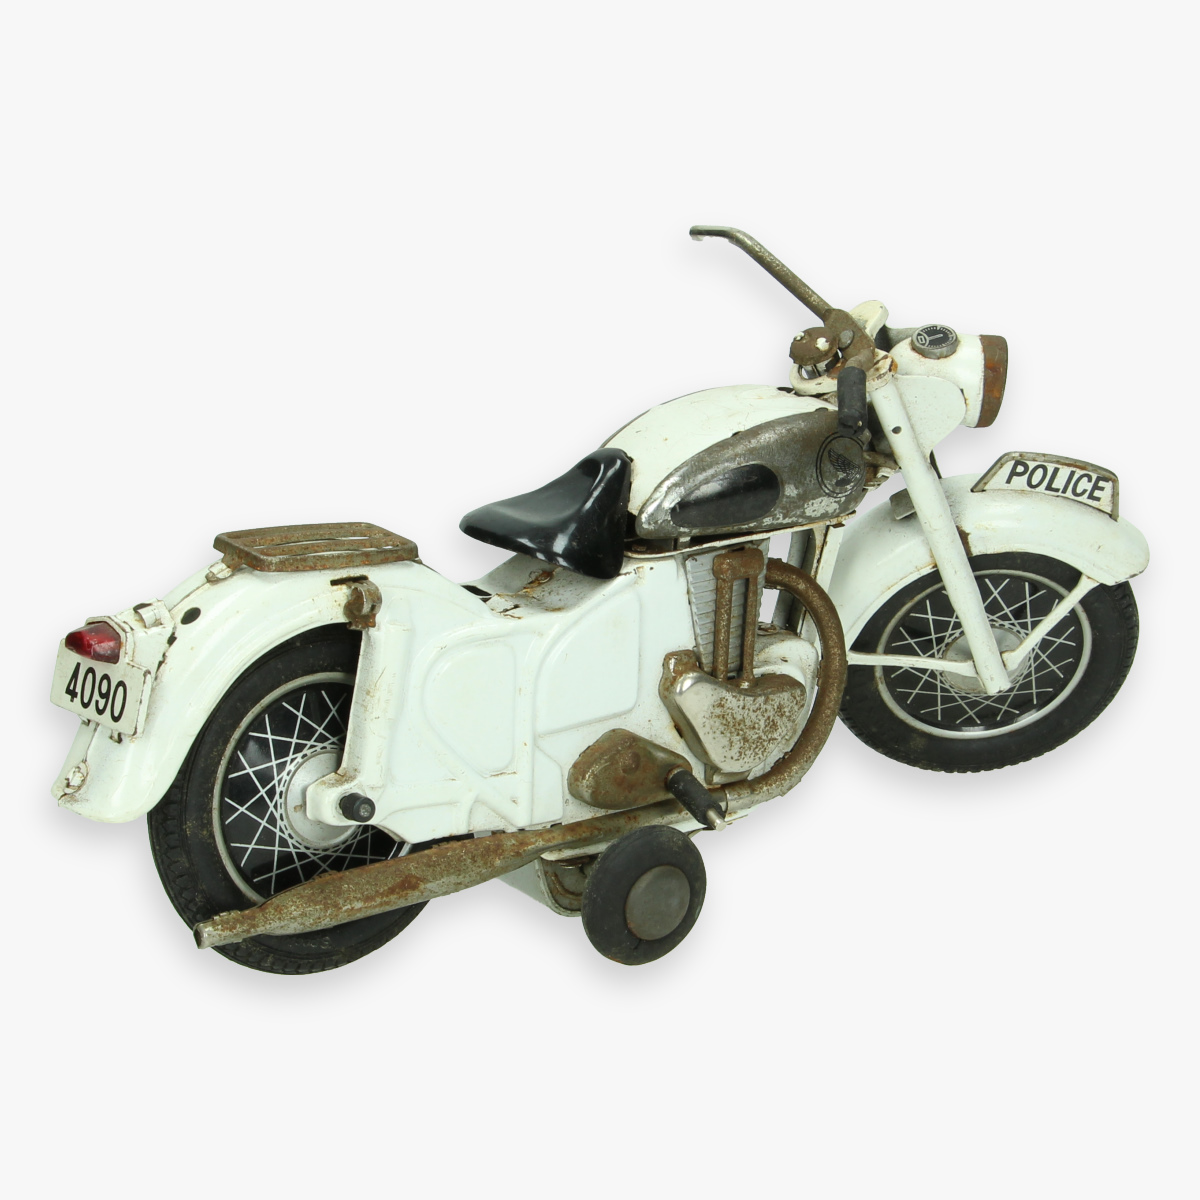 Afbeeldingen van tin toy motorcycle bandi zonder bestuurder en afstandsbediening